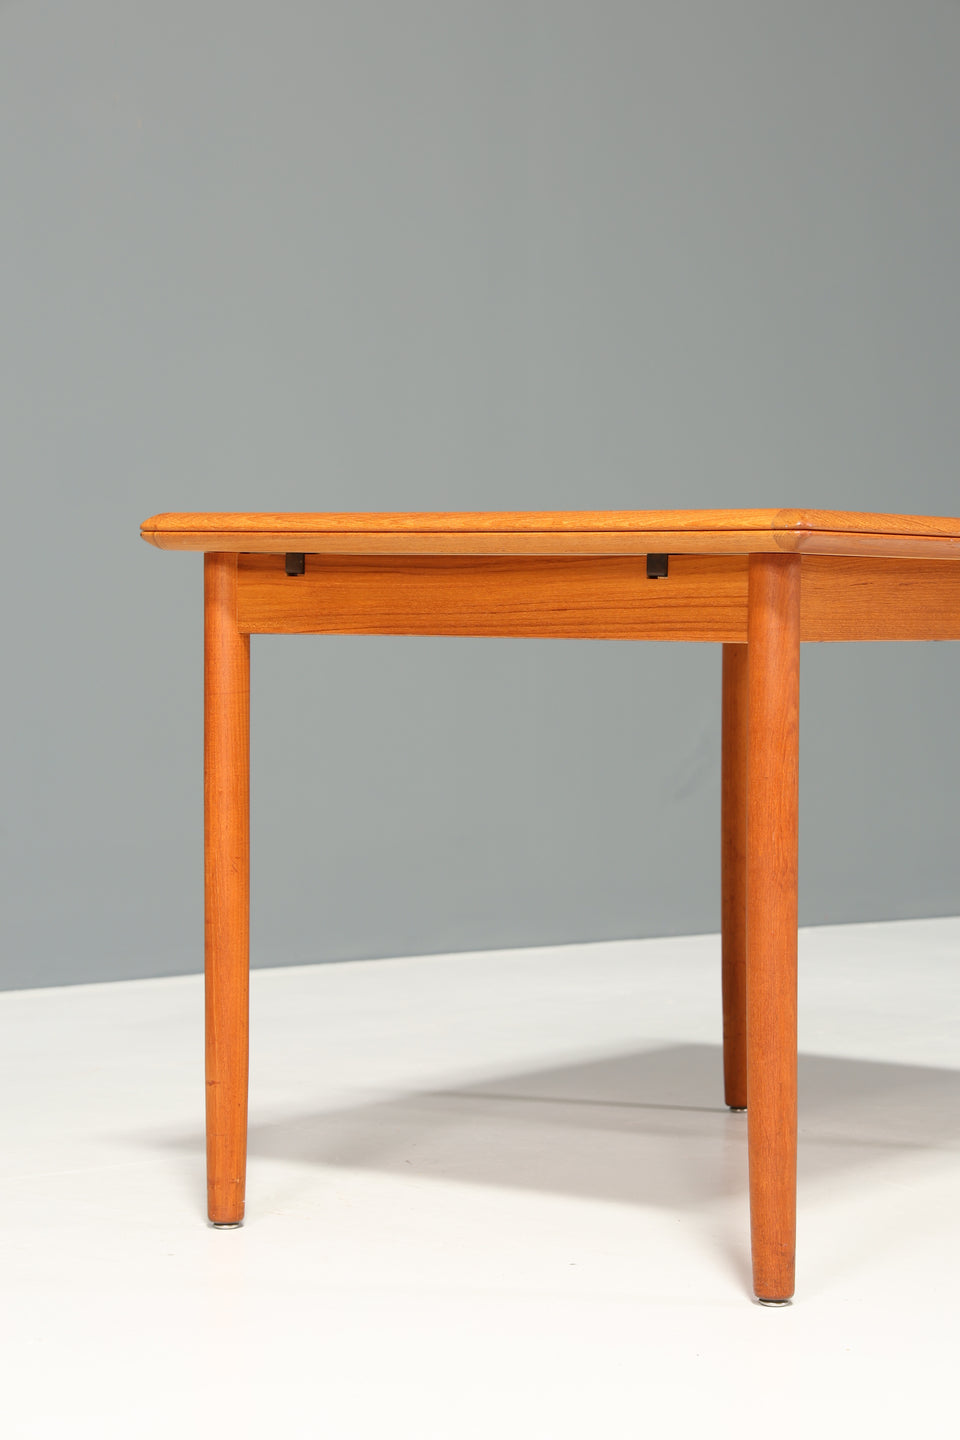 Wunderschöner Danish Design Esstisch ausziehbarer Teak Holz Küchentisch Mid Century Esszimmer Tisch